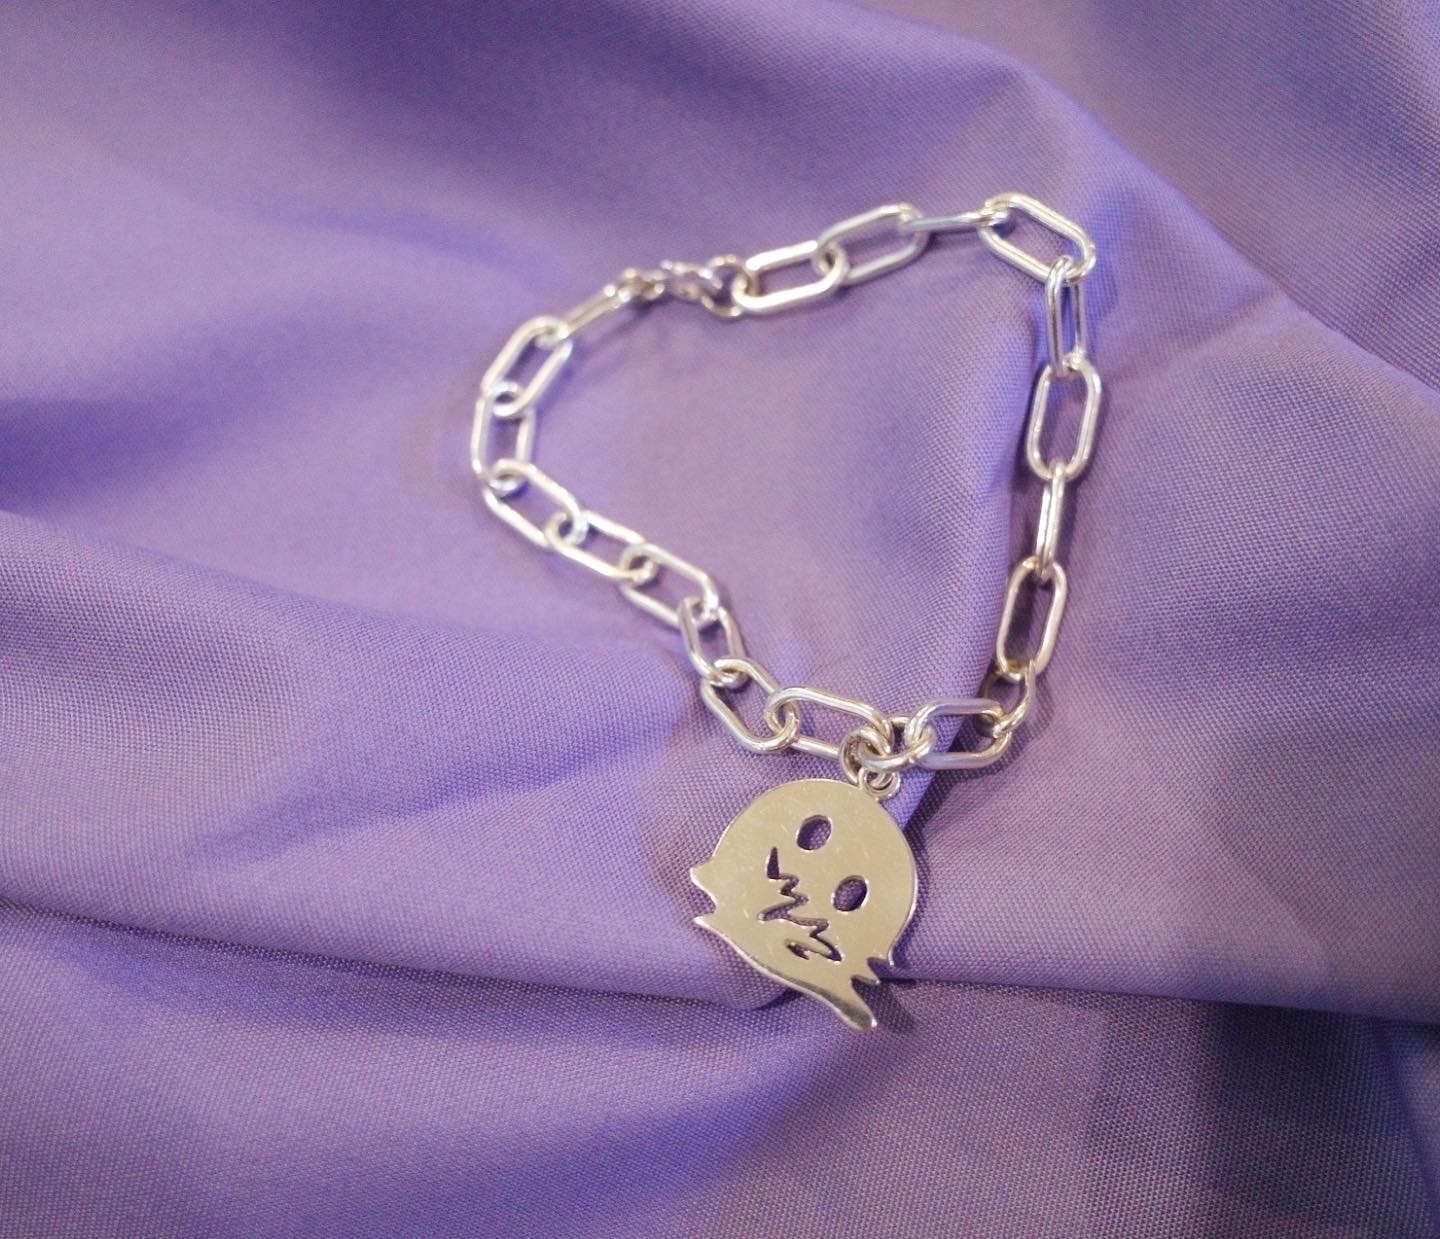 Melt silver chain bracelet